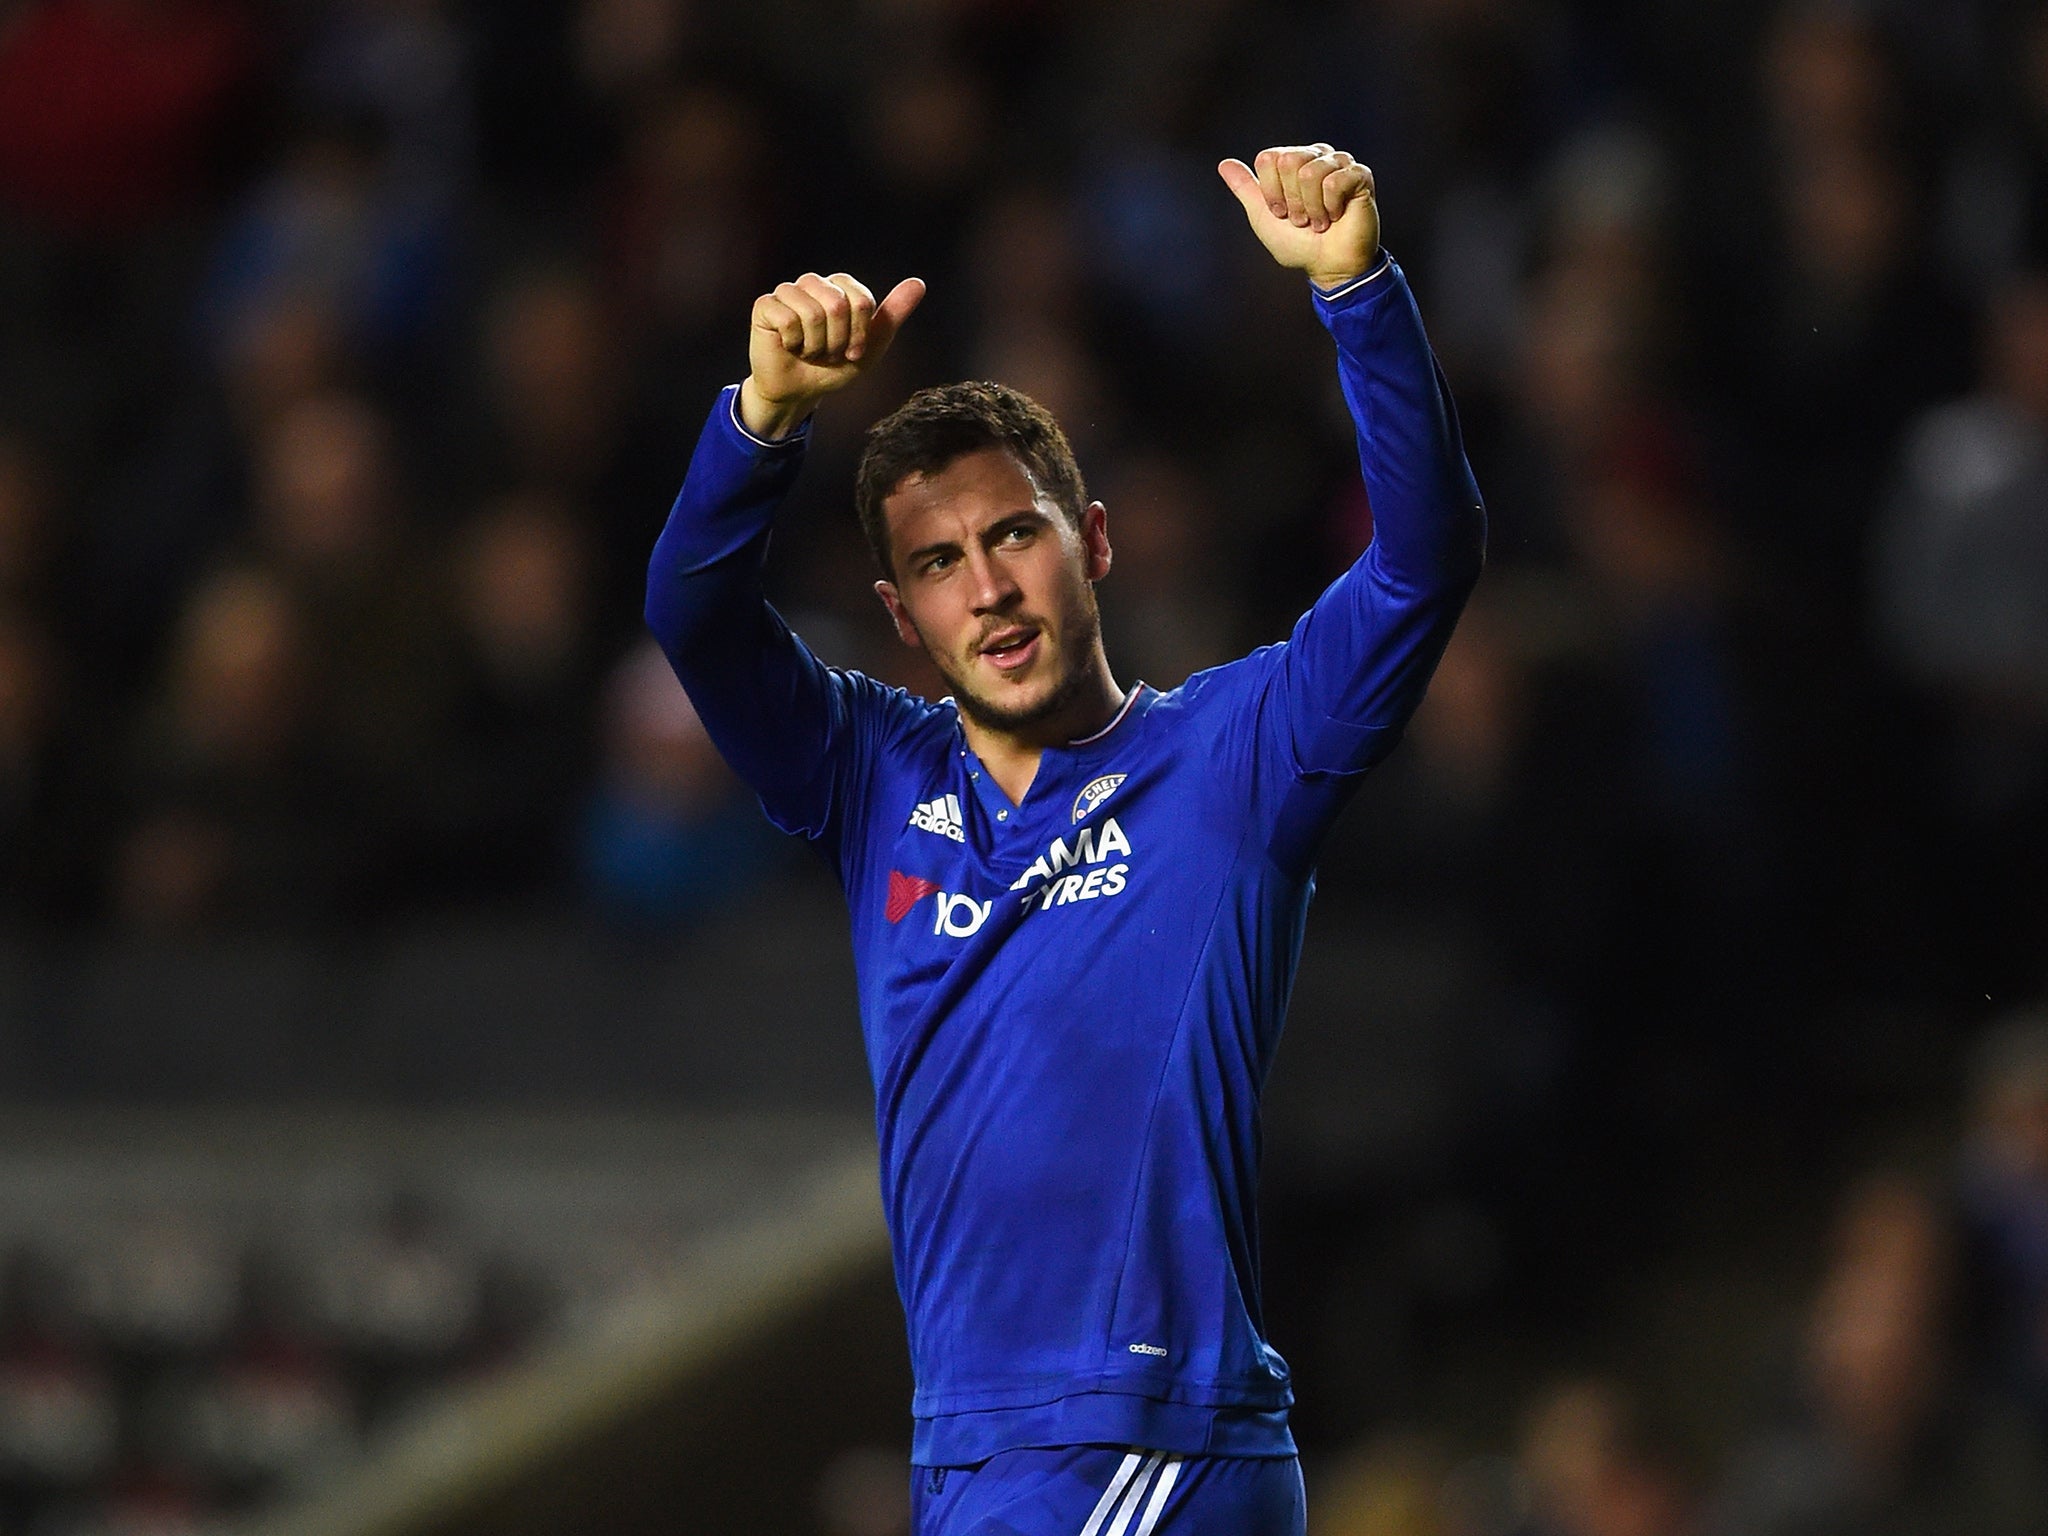 Chelsea forward Eden Hazard finally scored